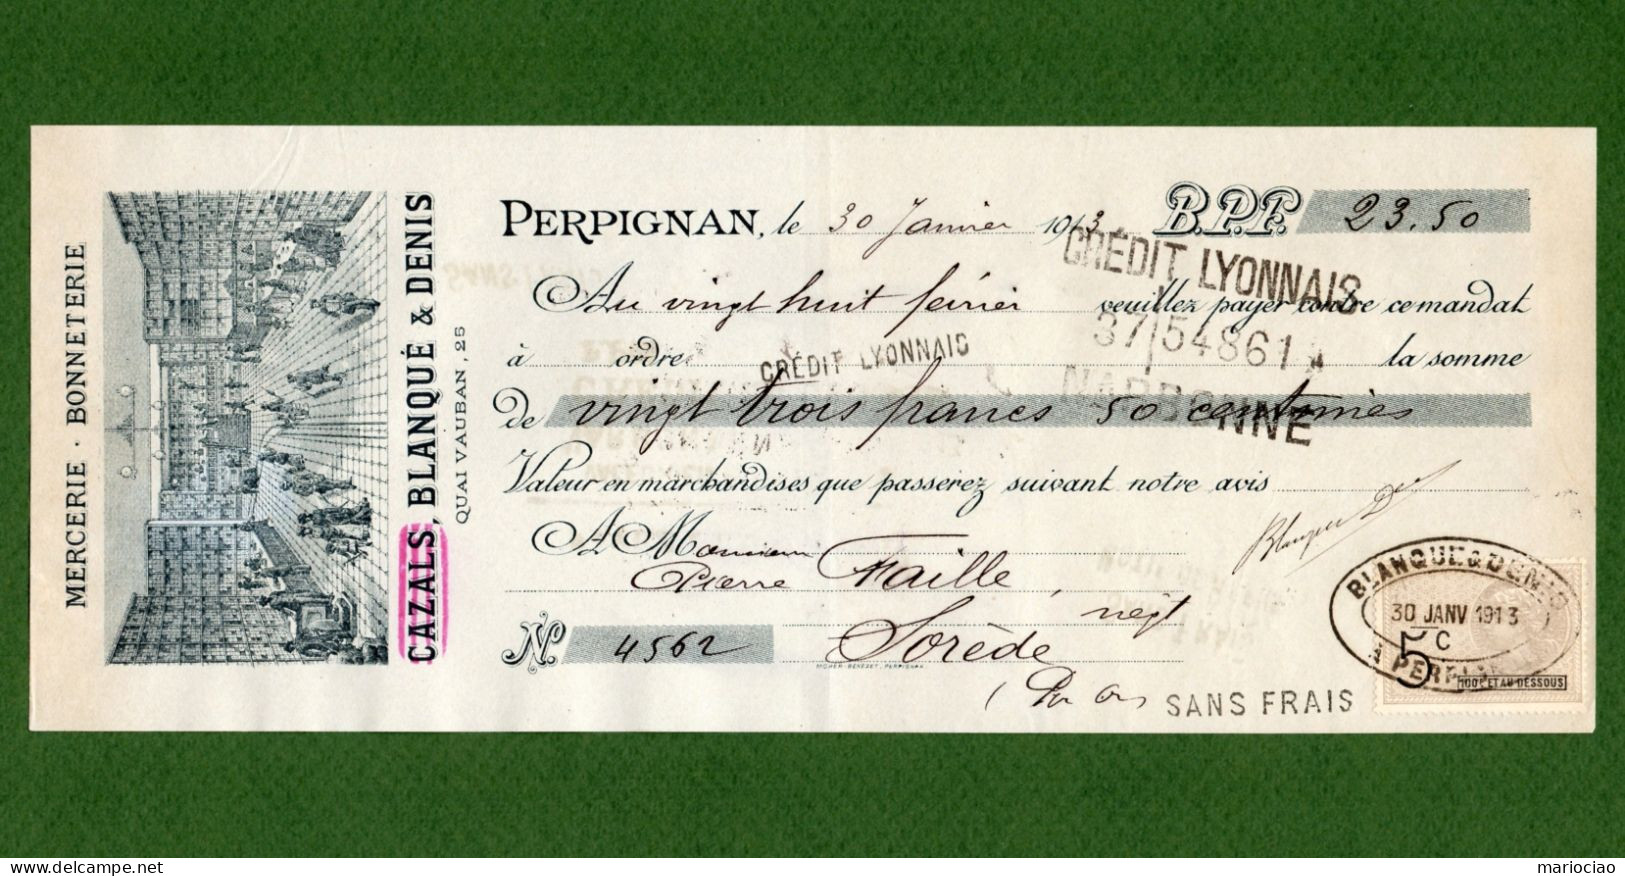 DC-FR 66 PERPIGNAN 1913 Mercerie Bonneterie BLANQUE & DENIS - Lettres De Change